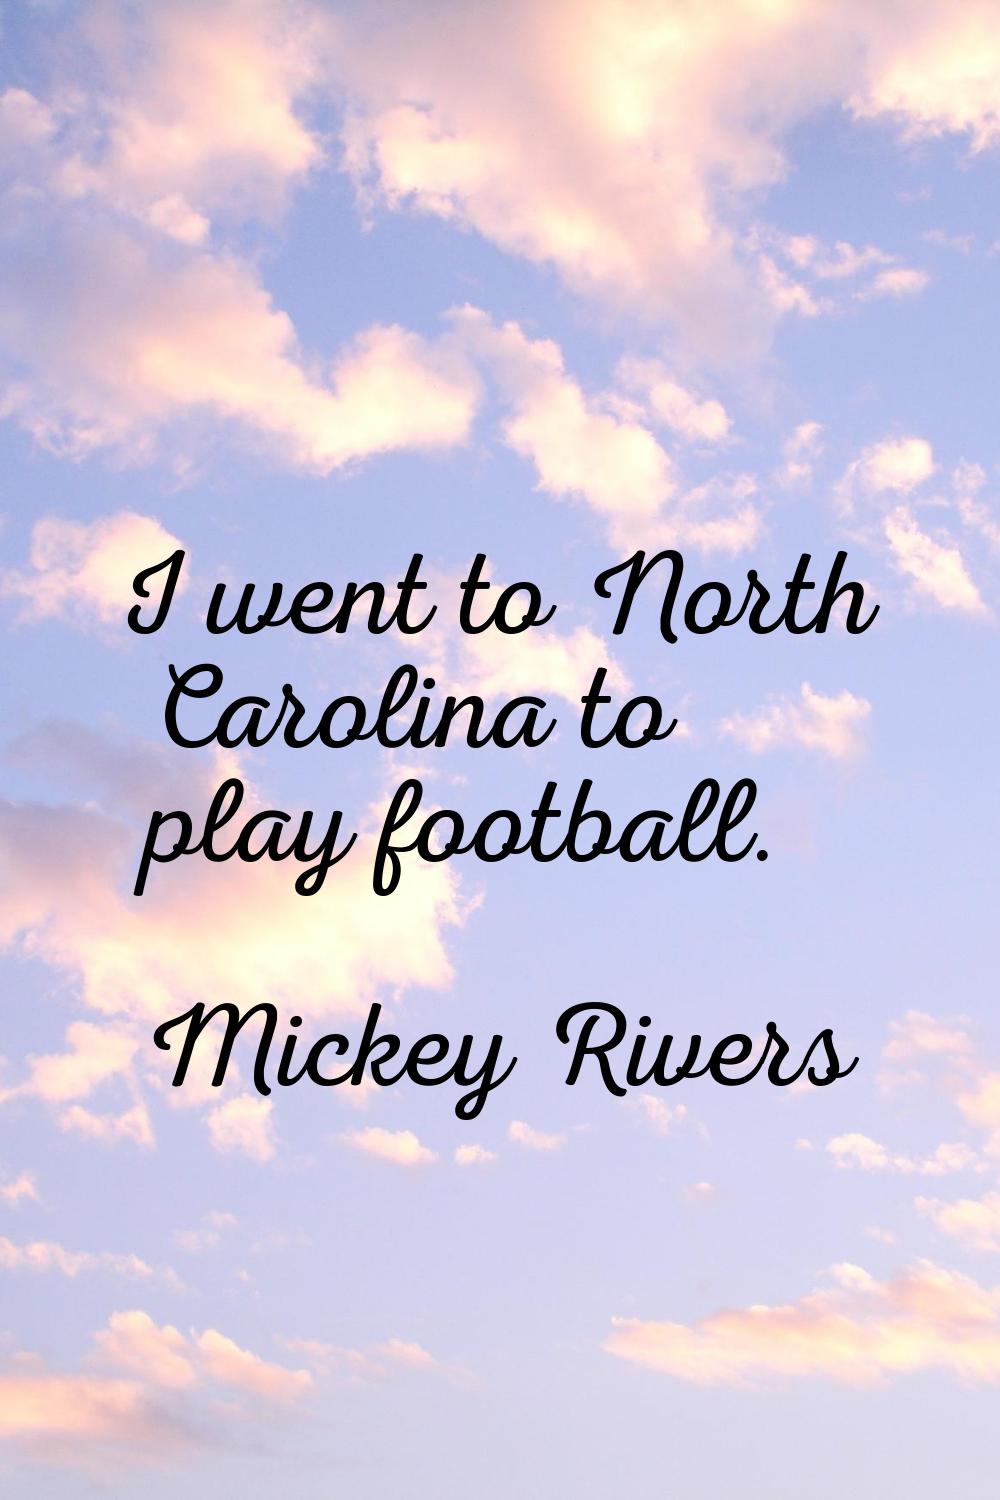 I went to North Carolina to play football.